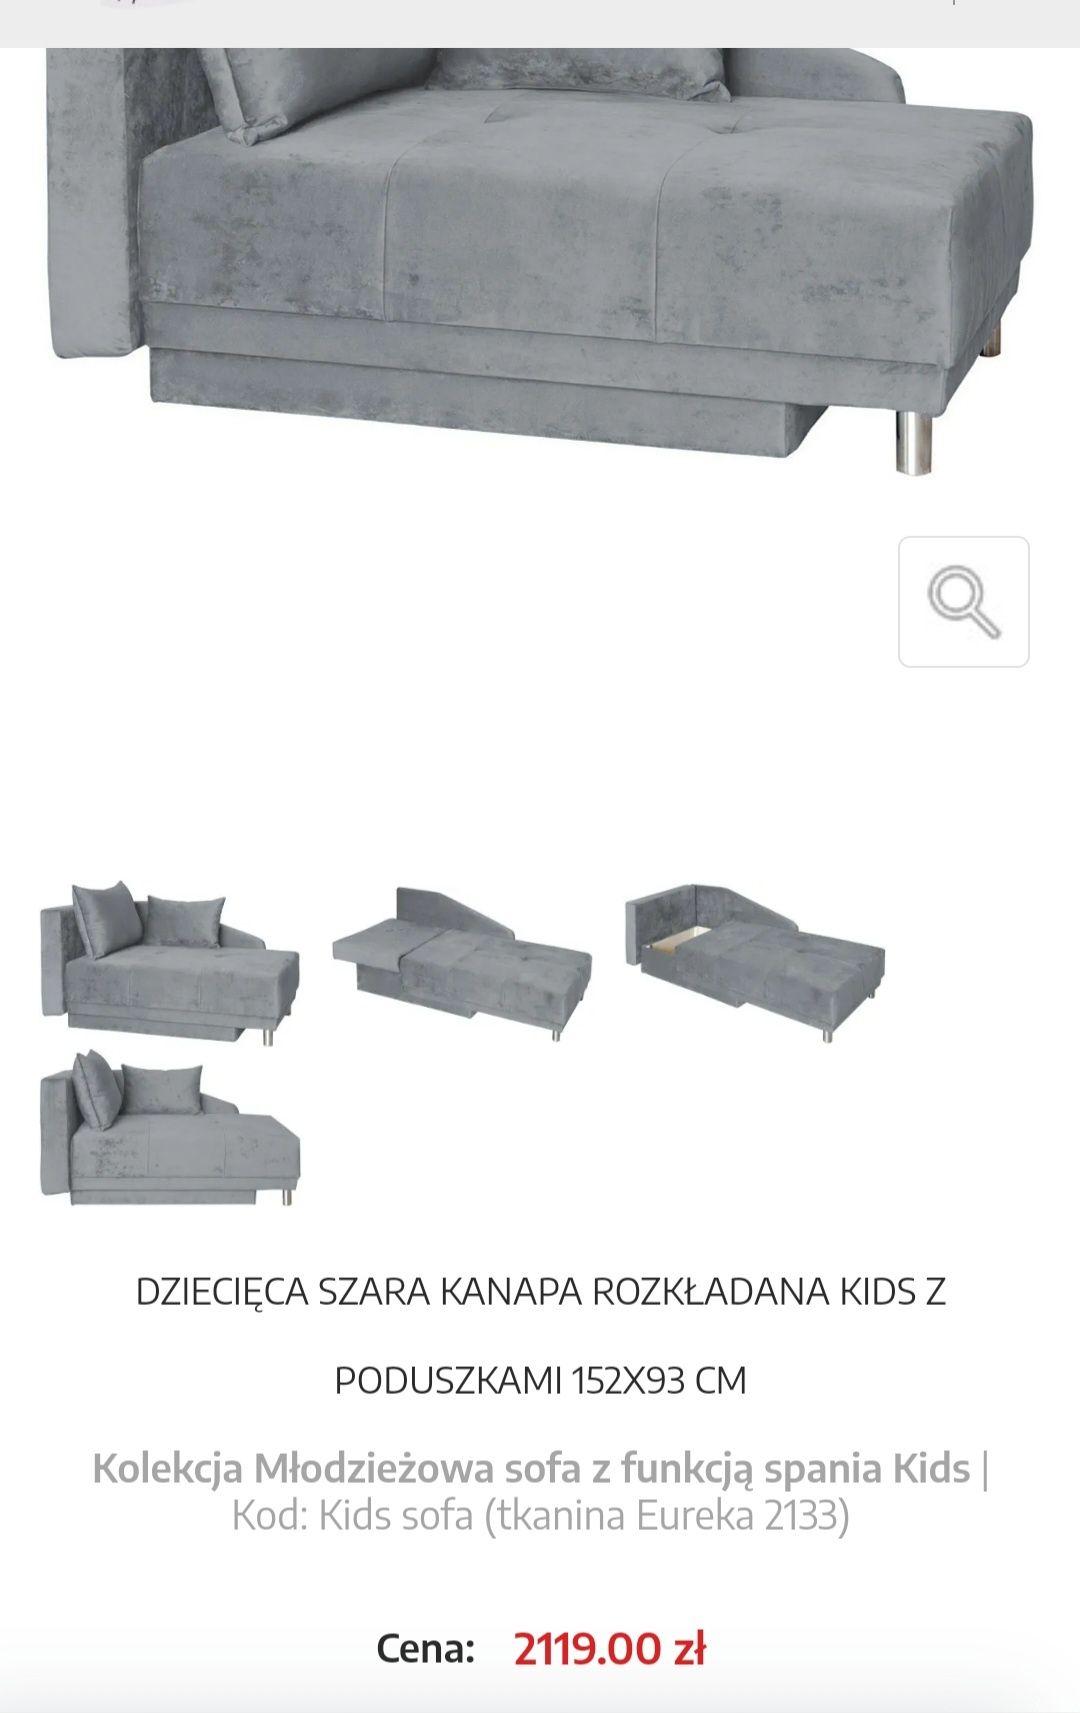 Sofa / kanapa dla dzieci, mlodziezy doroslych